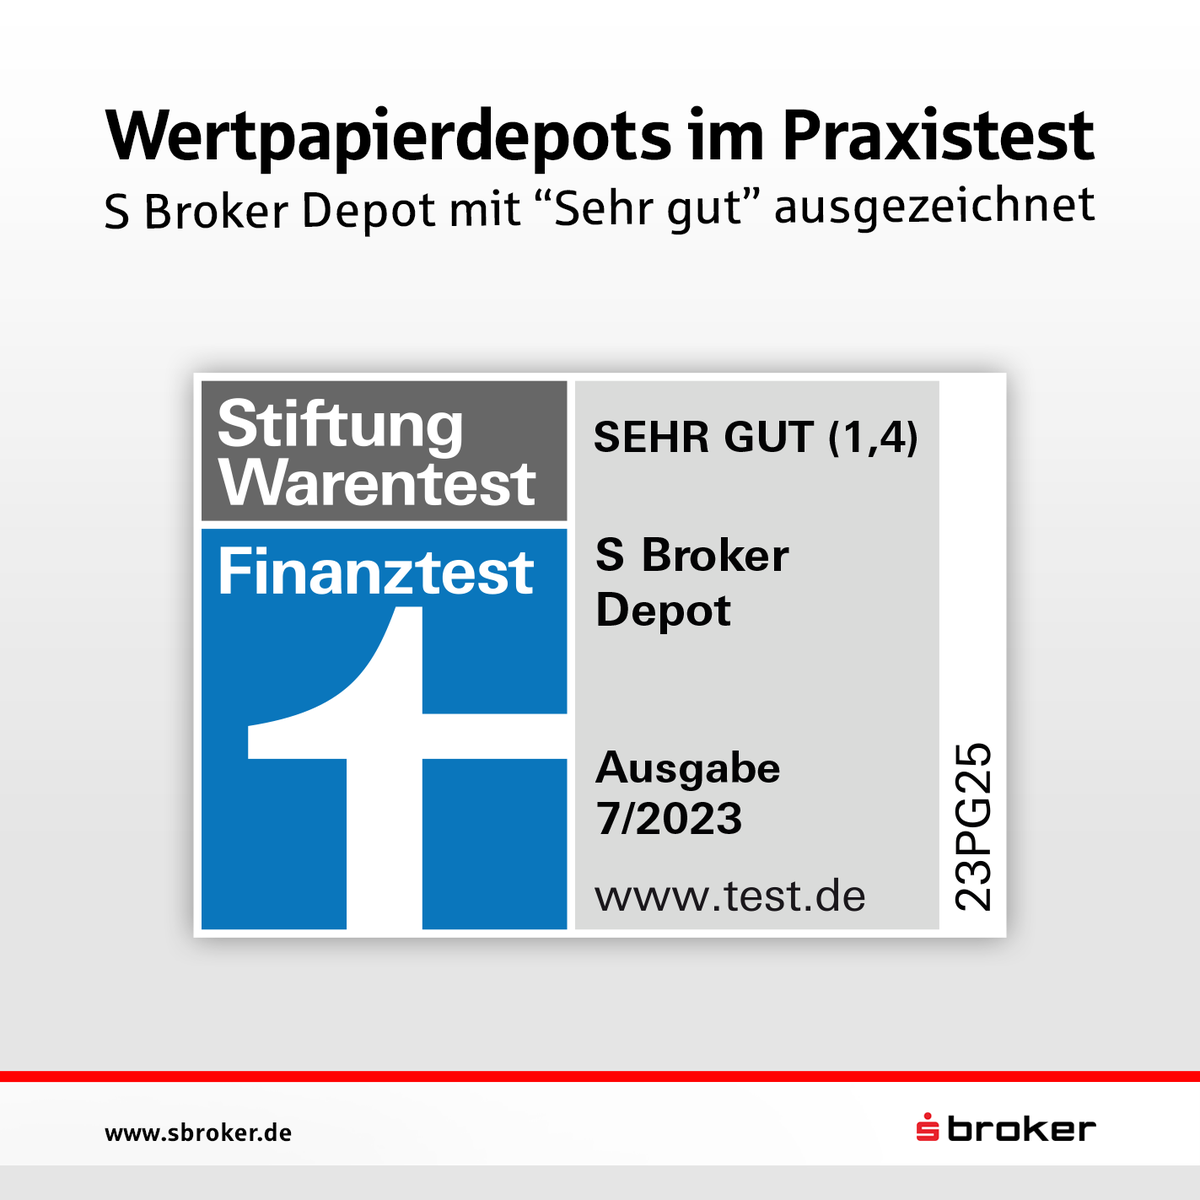 Das S Broker Depot mit 'Sehr gut' bewertet. 💪 

𝗩𝗶𝗲𝗹𝗲𝗻 𝗗𝗮𝗻𝗸!

#sbroker #sparkasse #wertpapiere #finanzen #trading #börse #Finanztest #Auszeichnung